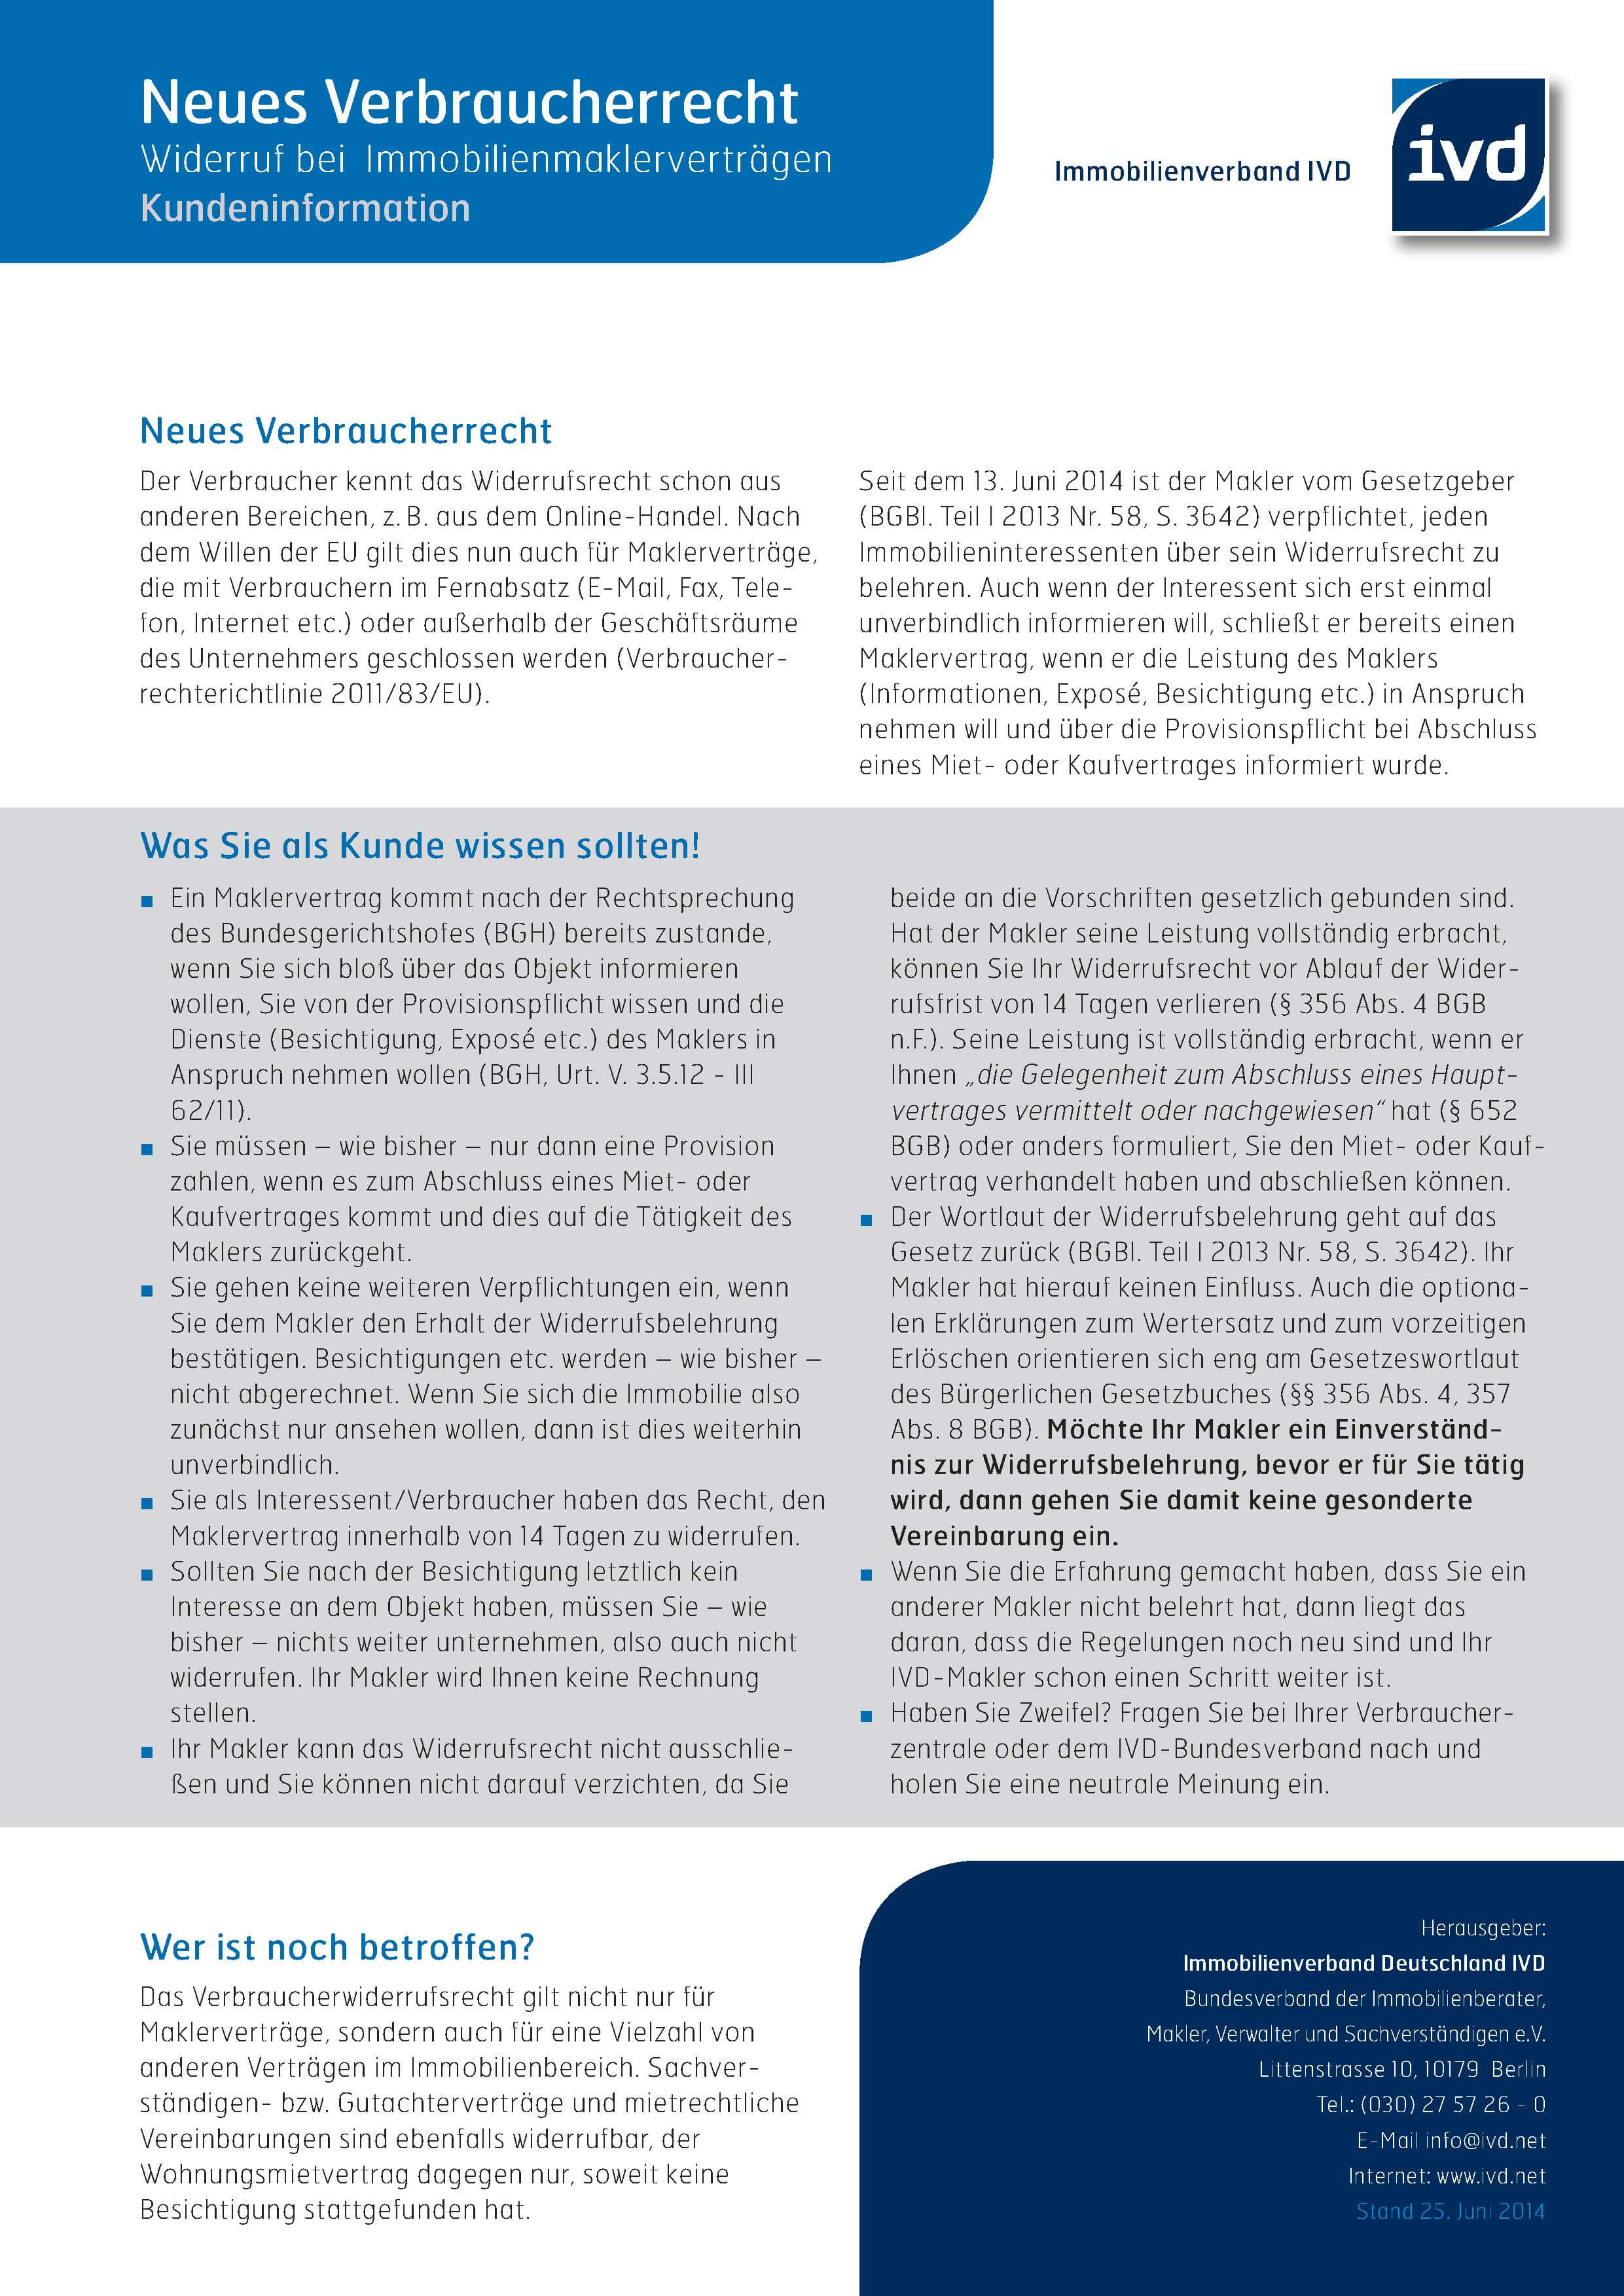 2014_06_27_Widerrufsrecht_Kundeninformation_pdf.compressed.jpg